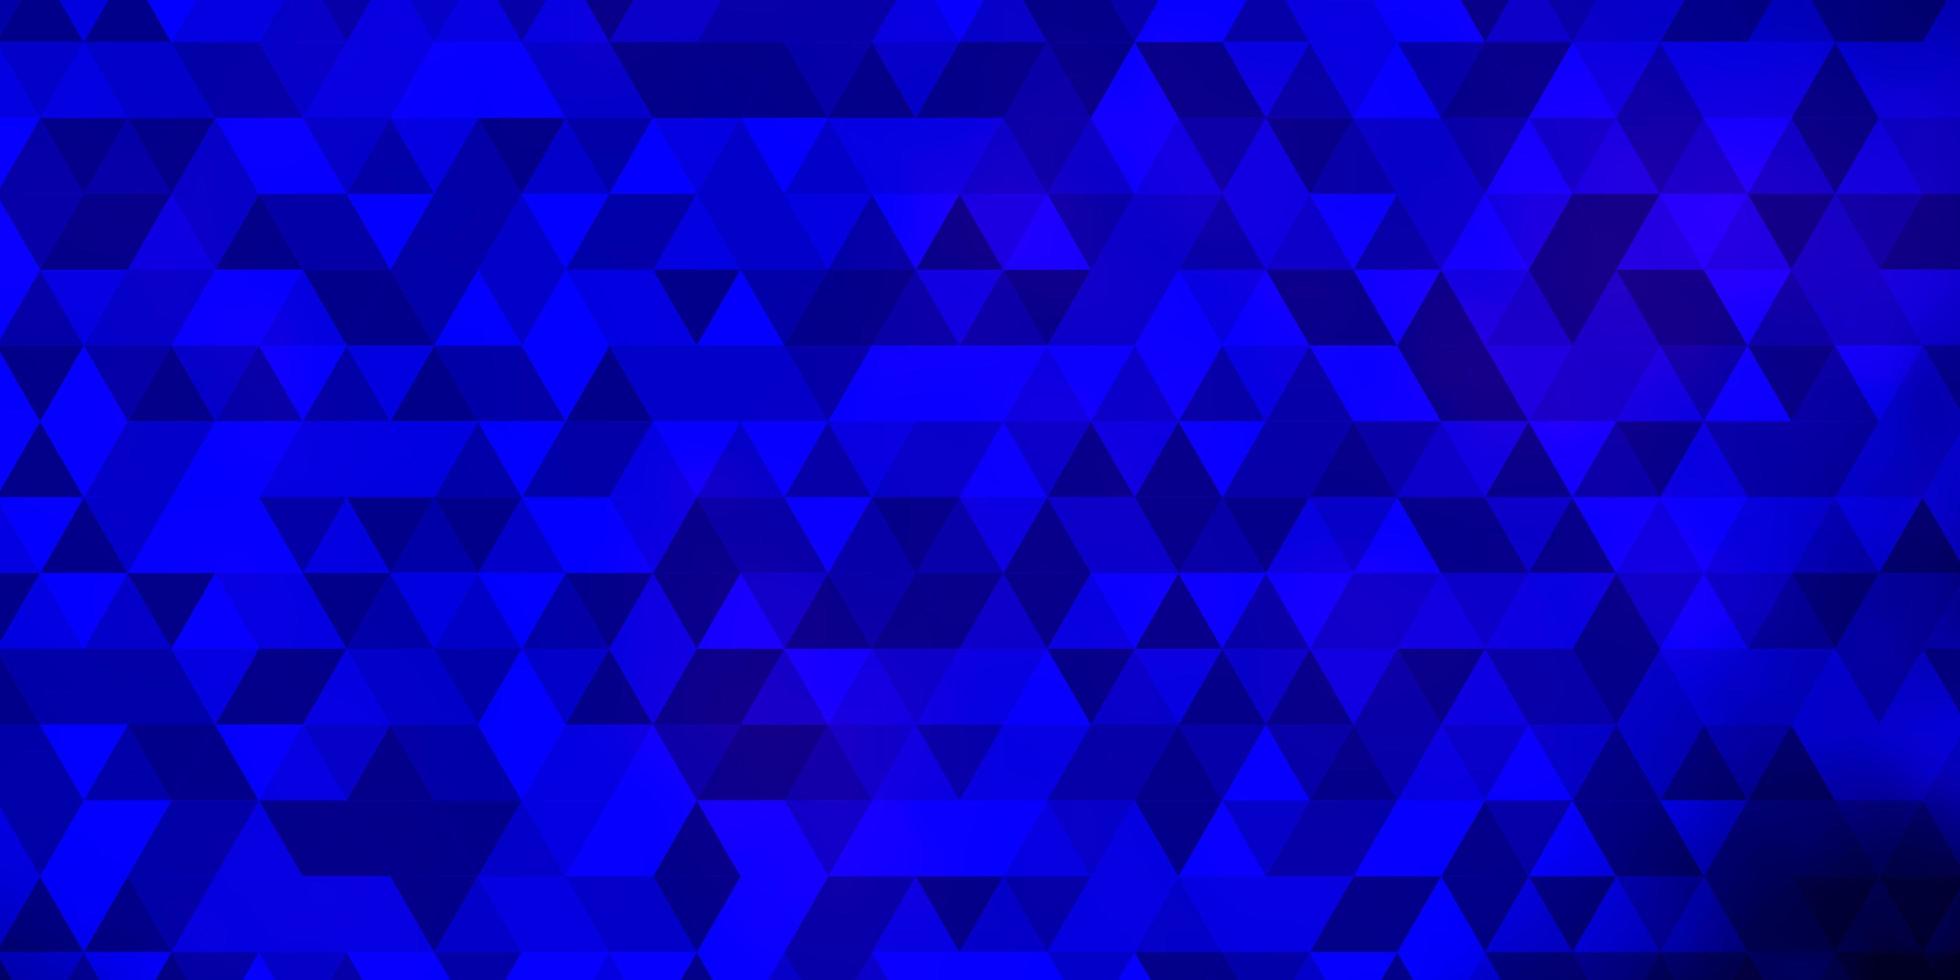 mörkblå vektorlayout med linjer, trianglar. vektor